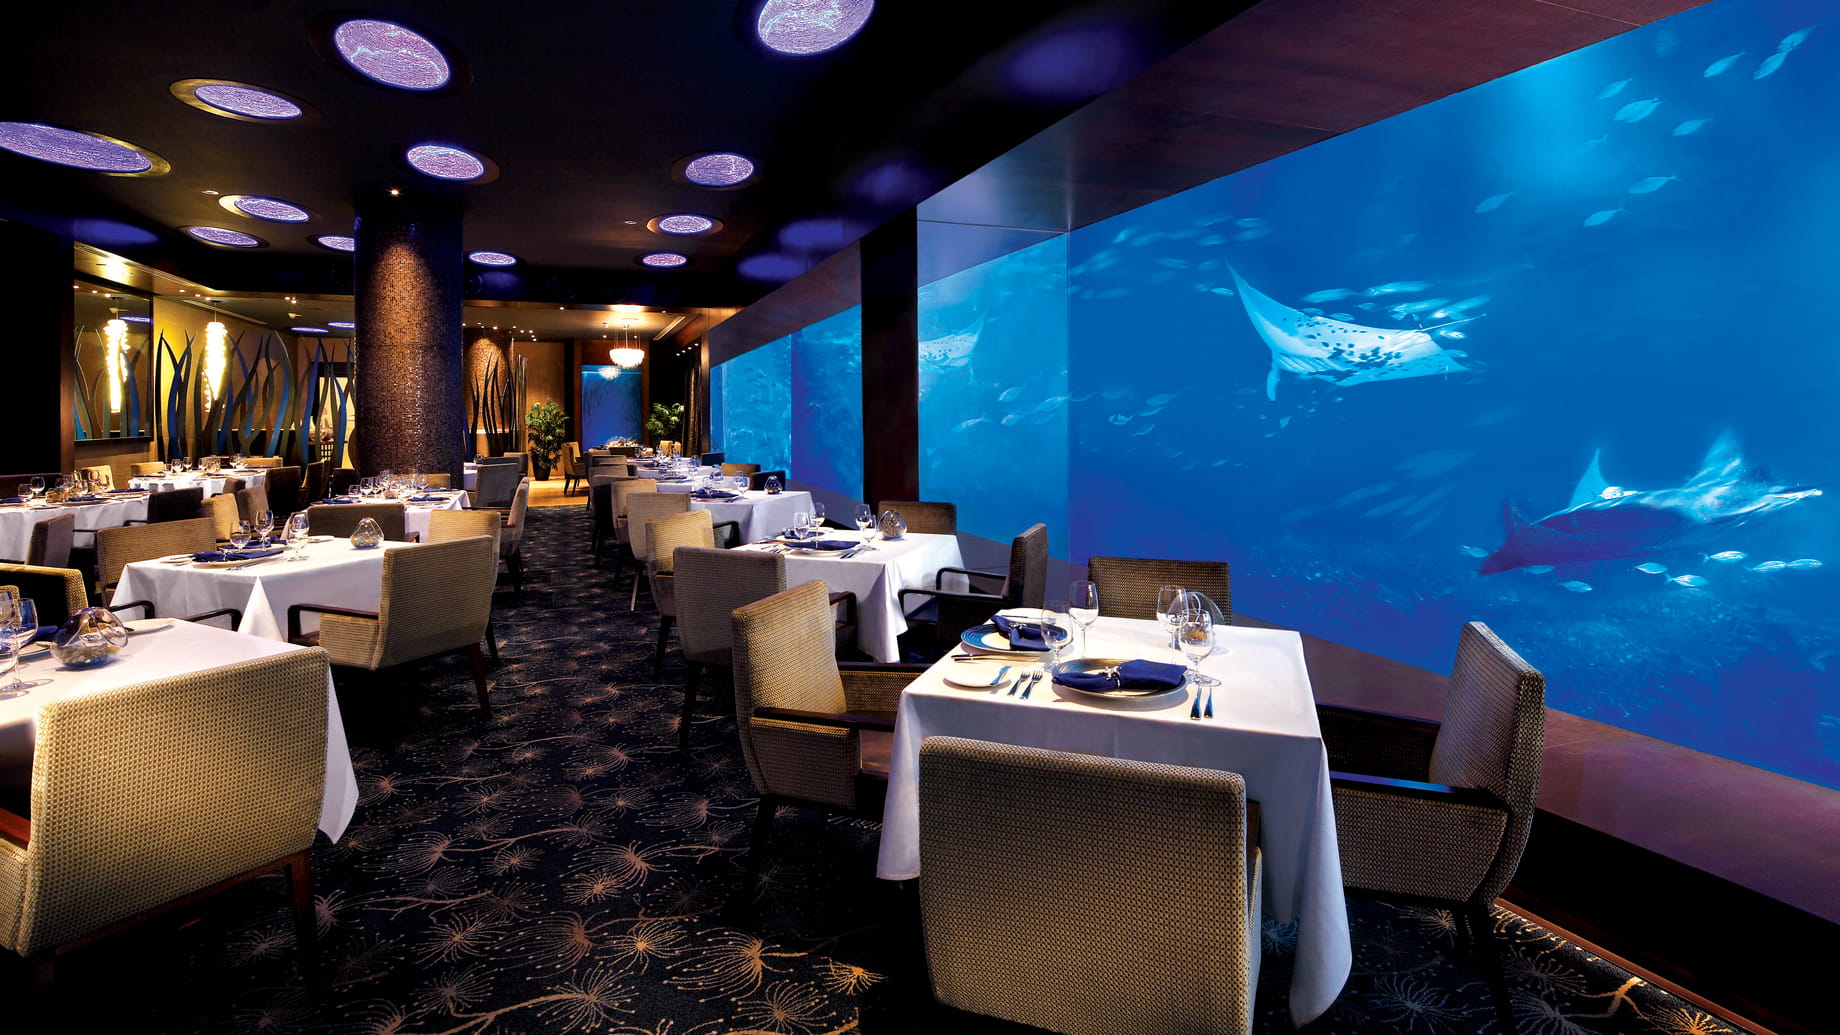 restaurants near ocean casino resort